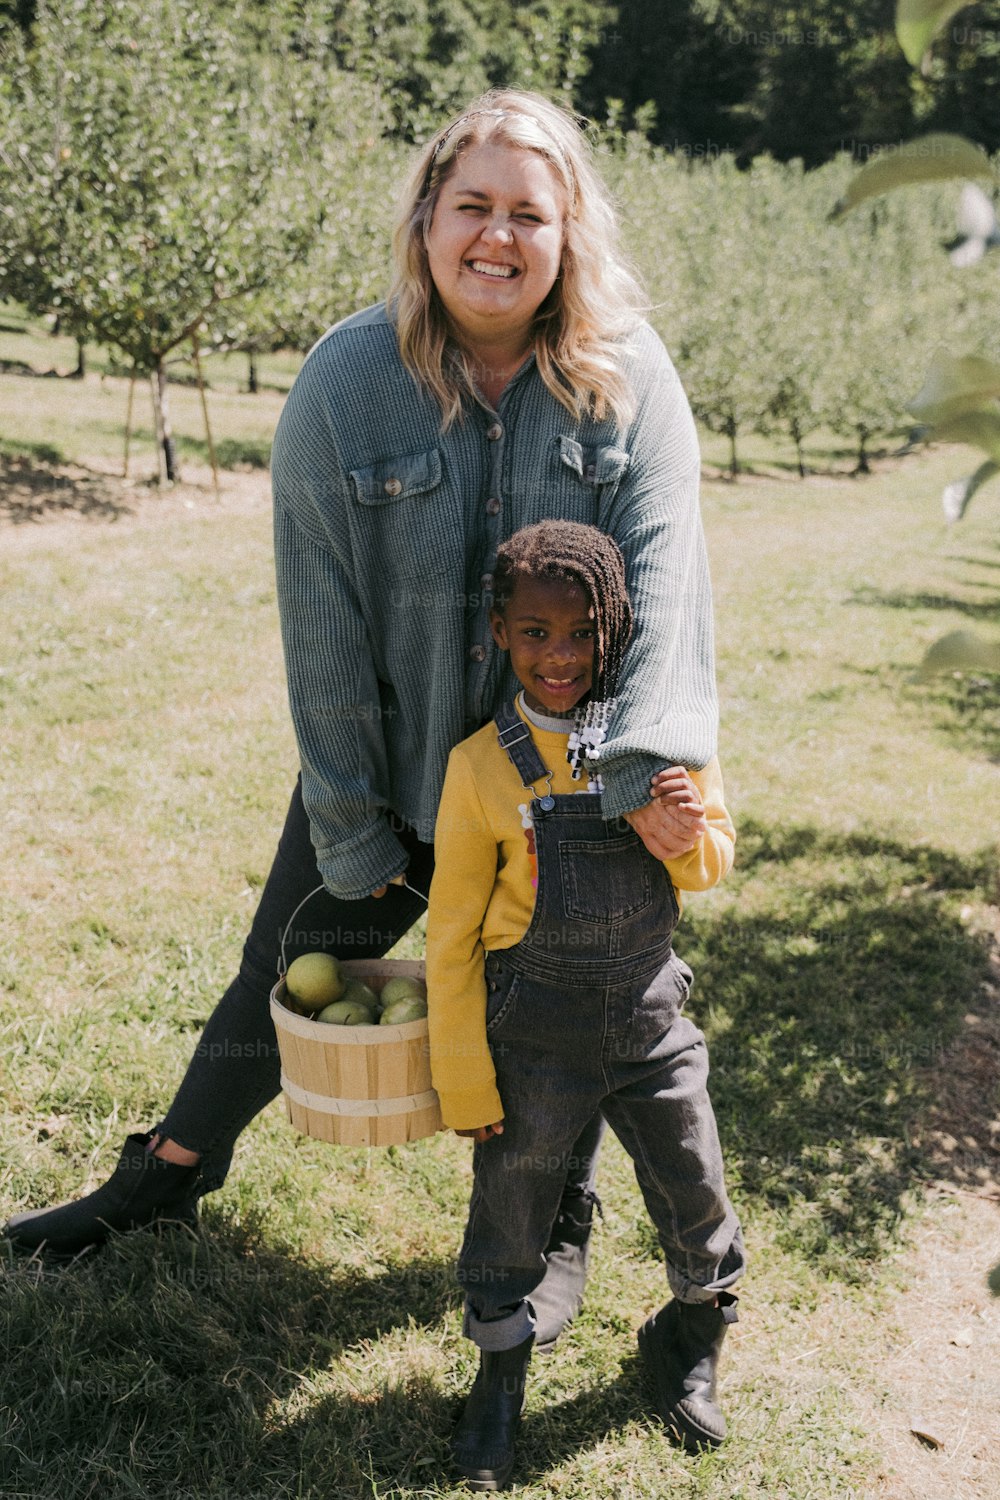 Una mujer sosteniendo una canasta de manzanas mientras está de pie junto a un niño